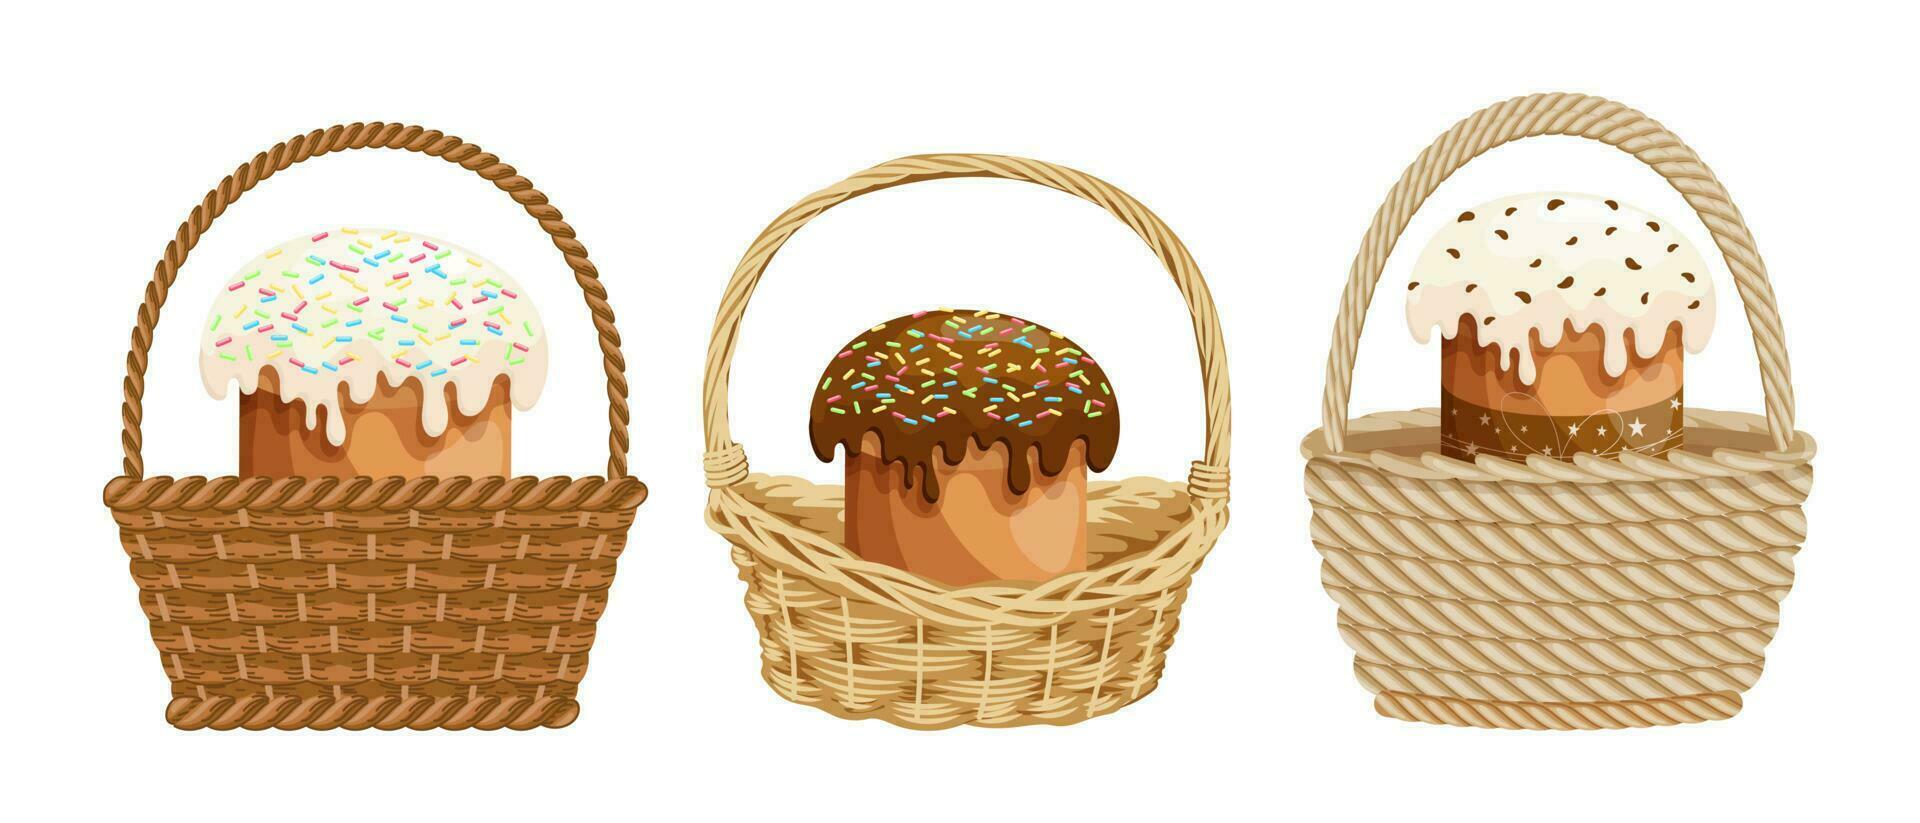 korg- korgar med påsk kakor, uppsättning. färgrik påsk illustration, hälsning kort, vektor